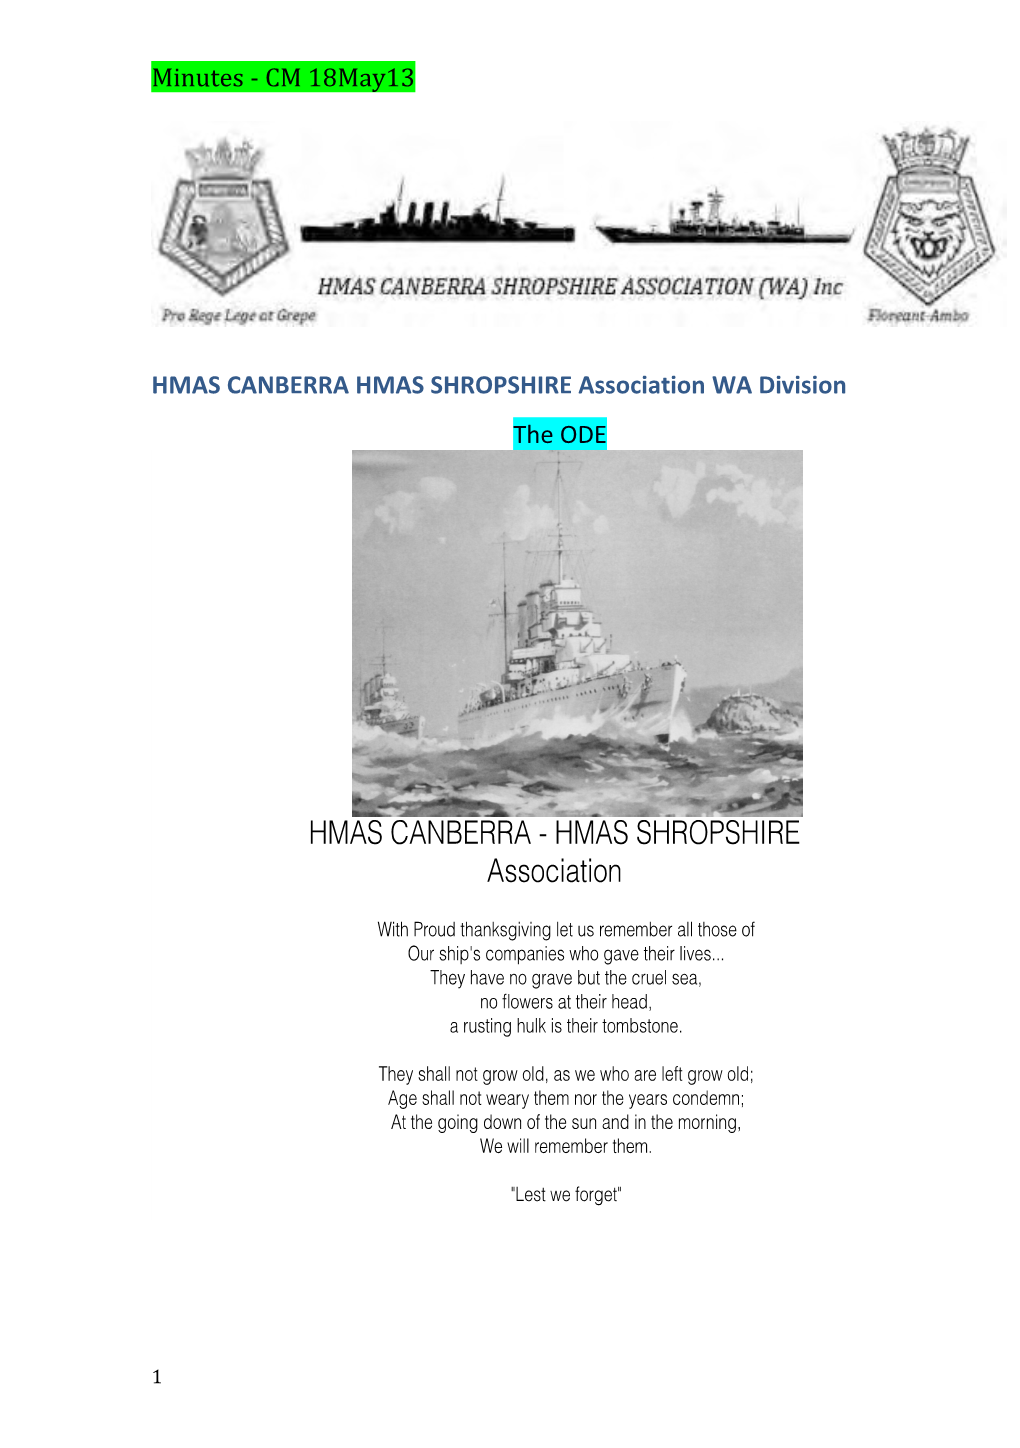 HMAS CANBERRA HMAS SHROPSHIRE Association WA Division